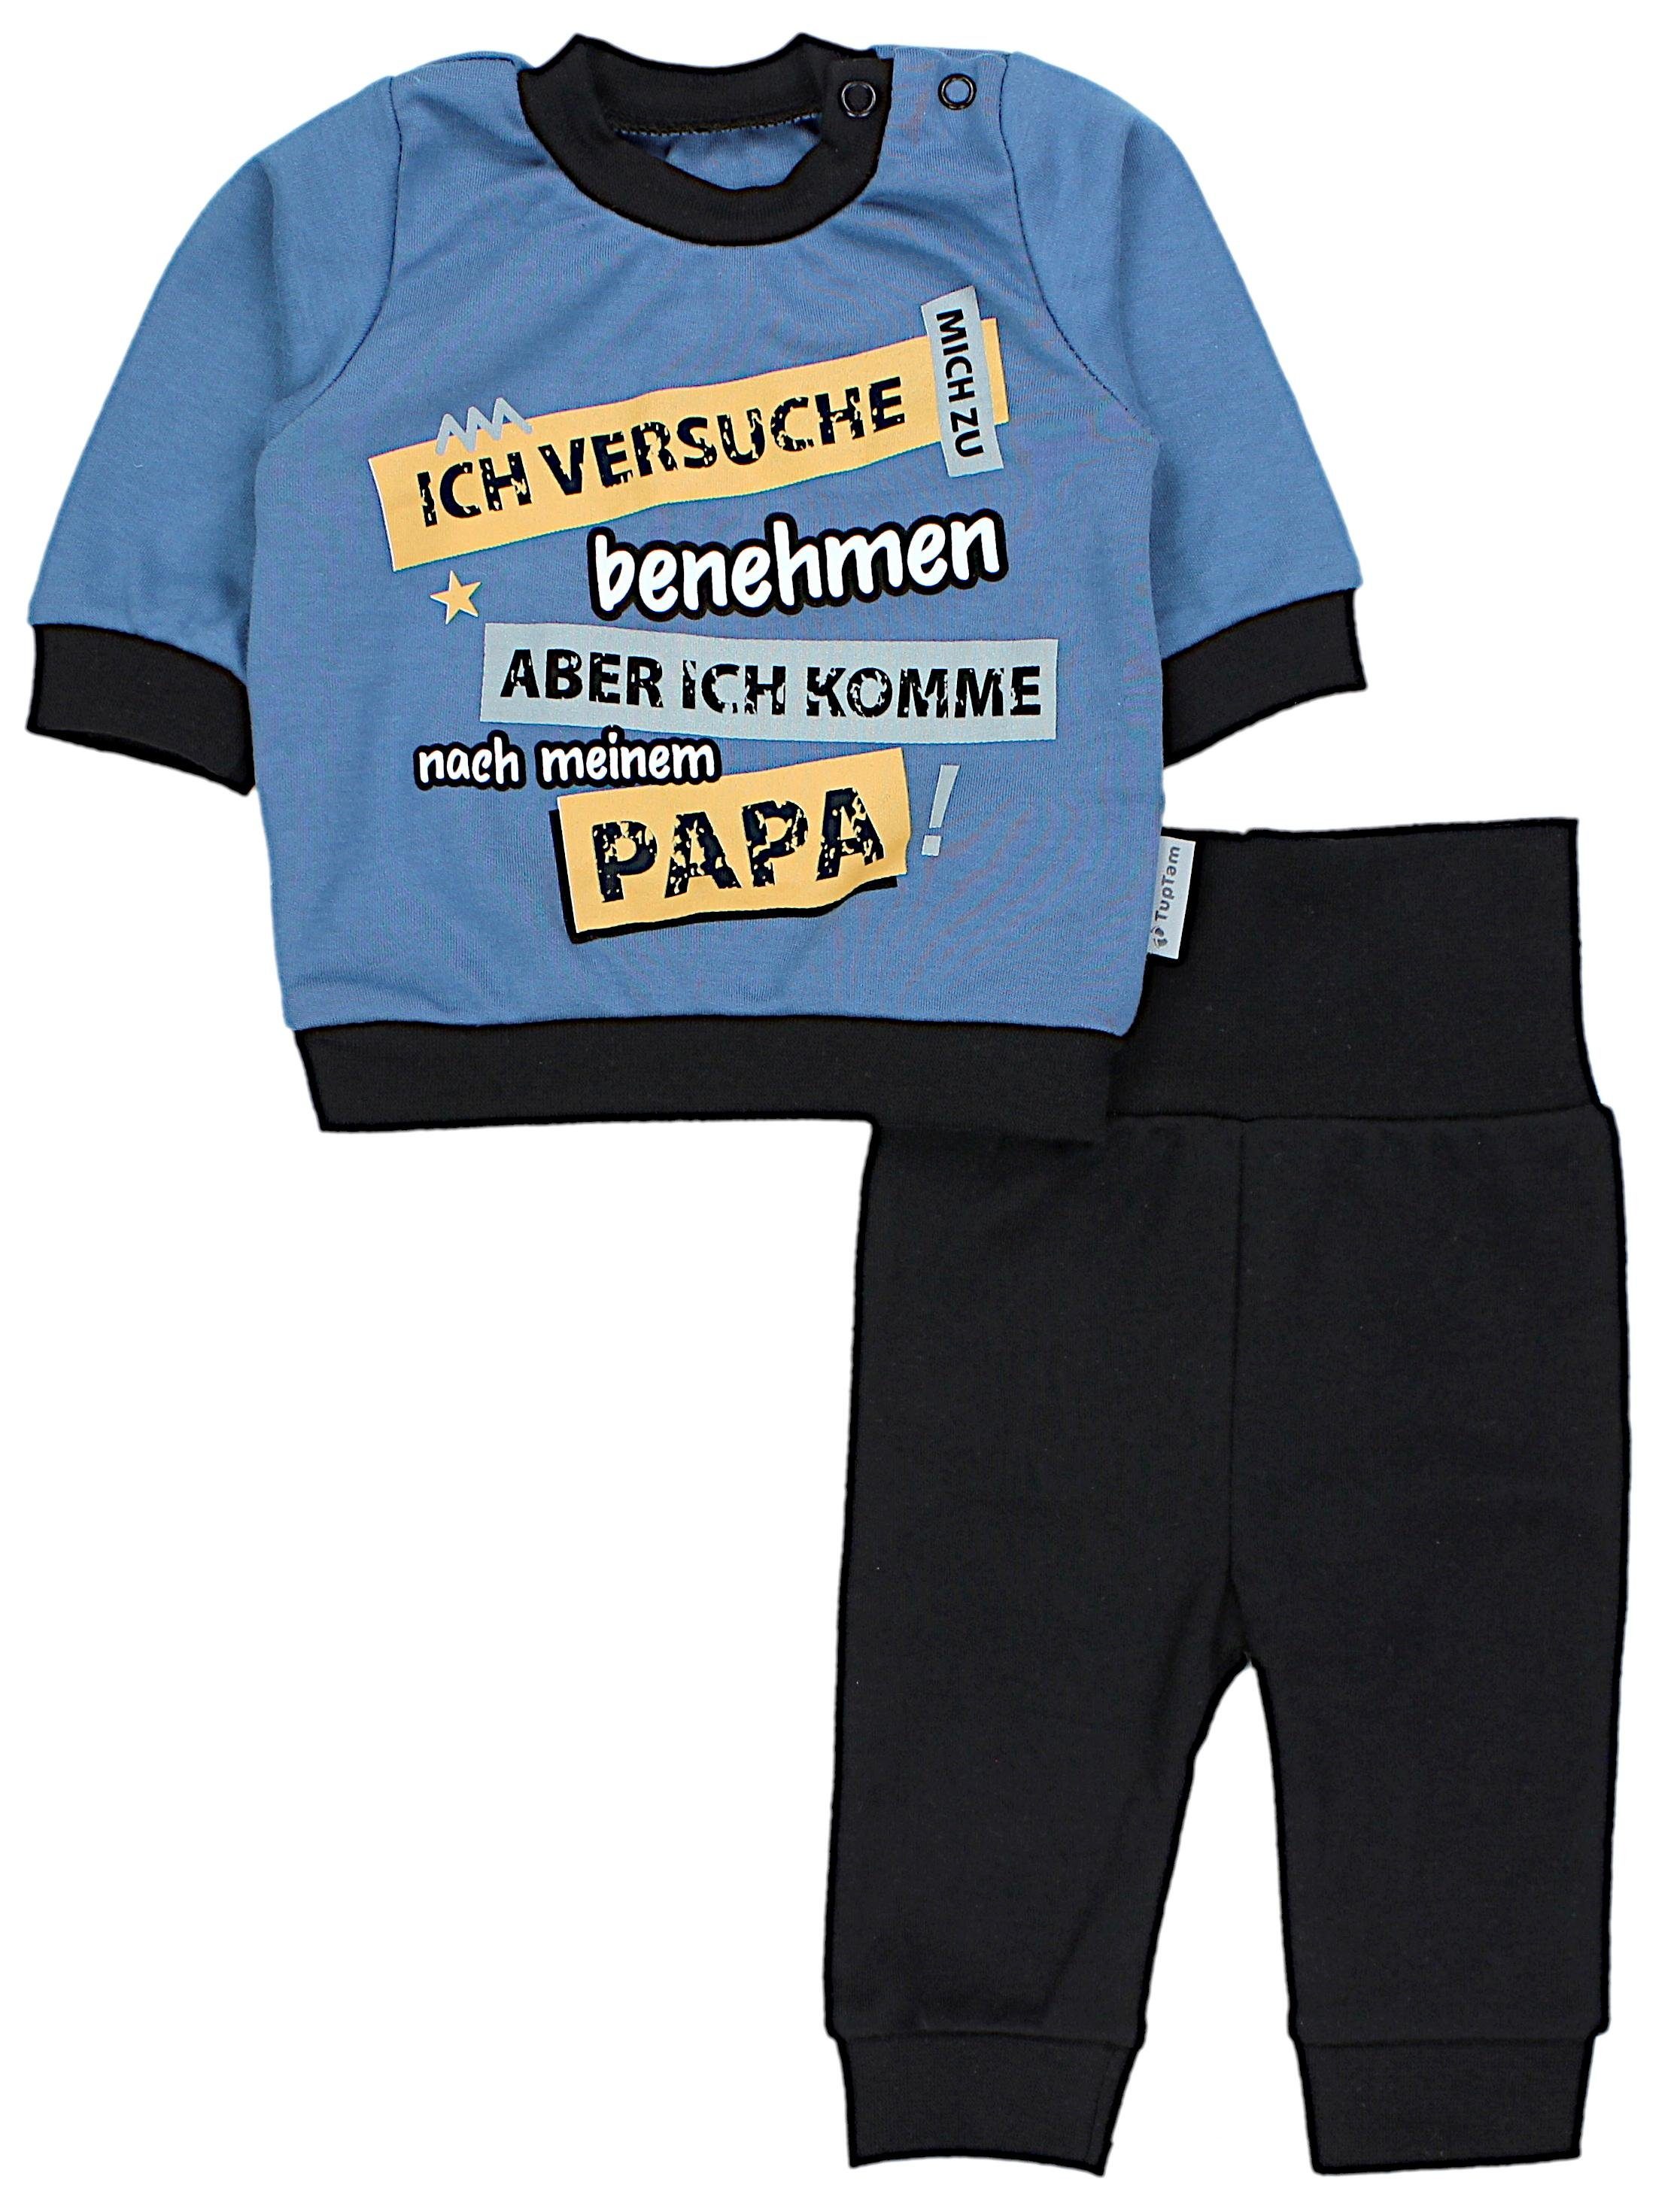 TupTam Erstausstattungspaket Baby mit Langarmshirt Spruch / Babyhose Jeansblau Ich benehmen zu Print Jungen Babykleidung Outfit versuche mich Schwarz